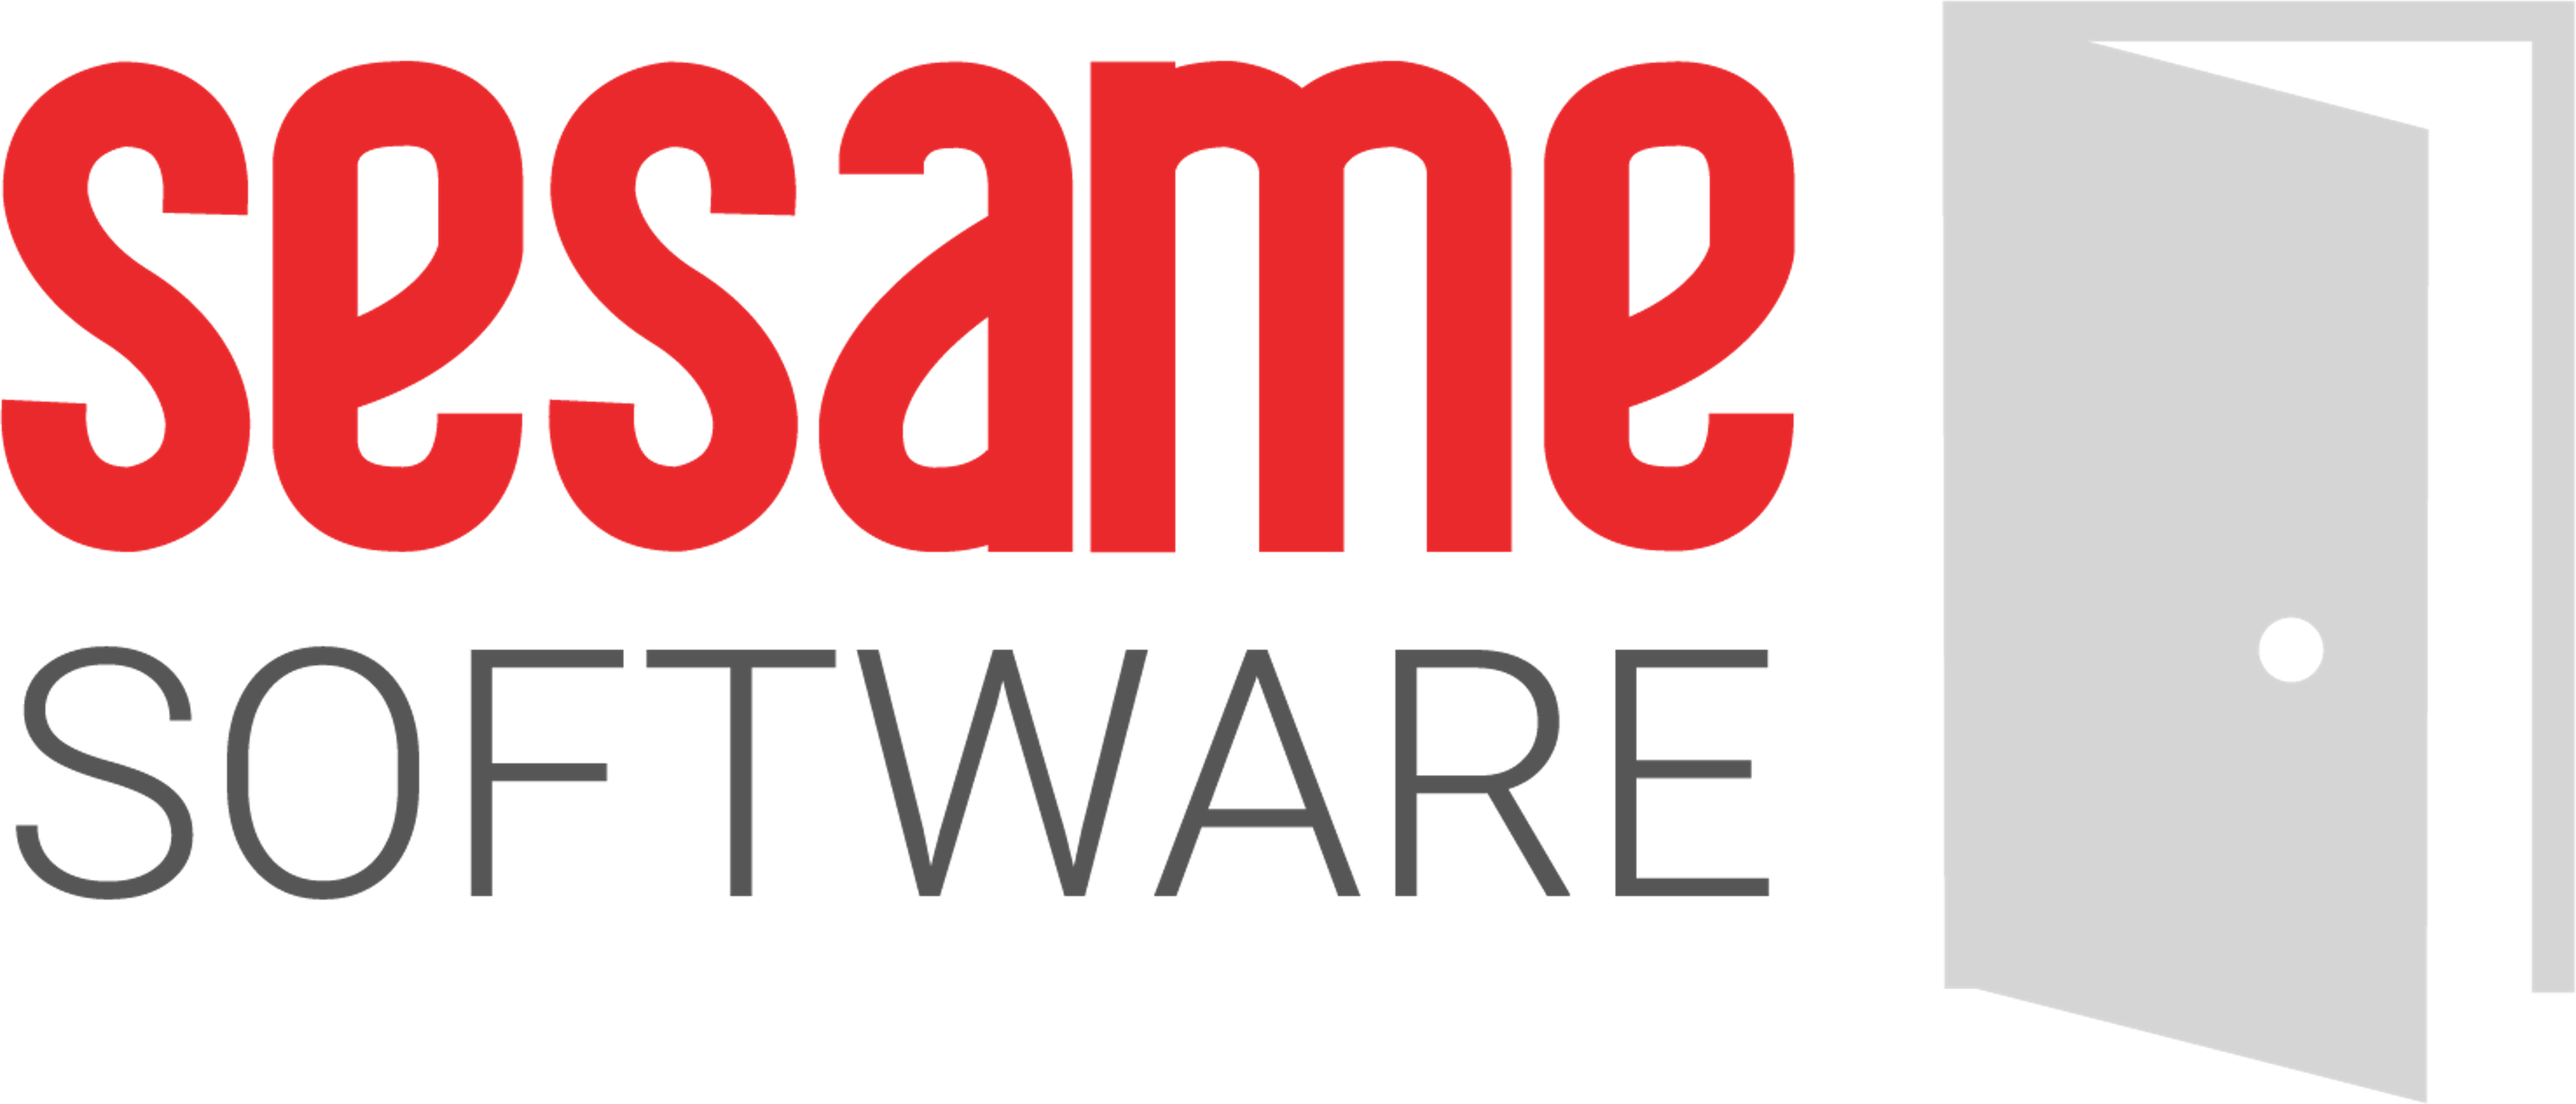 Sesame Software Logo